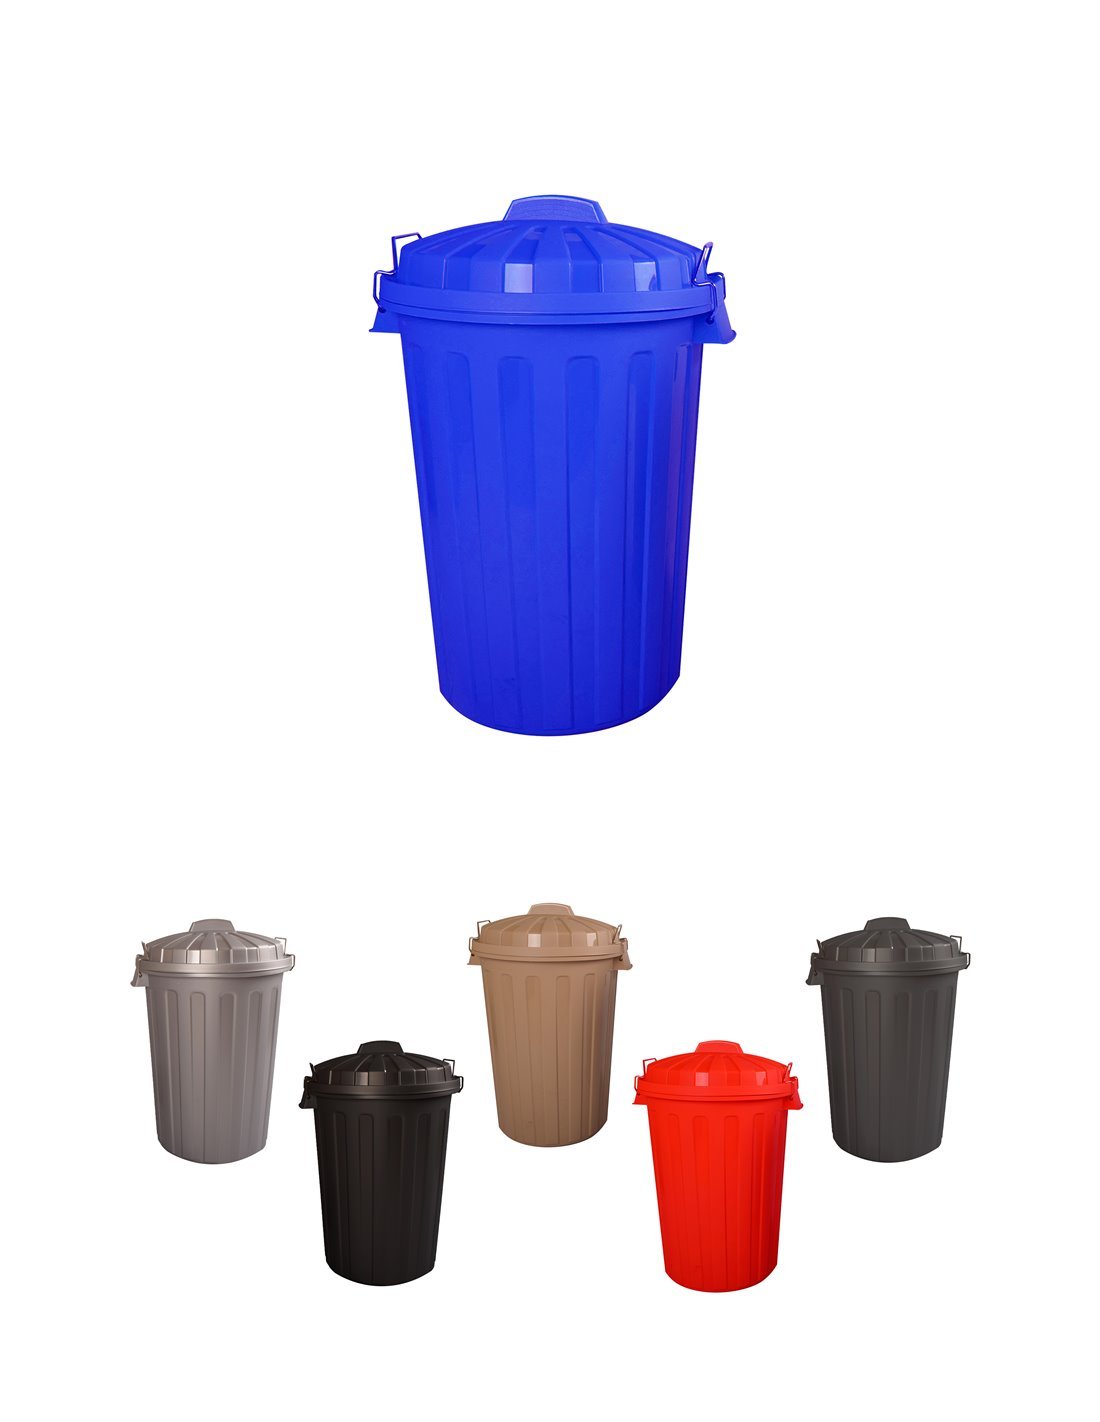 Basura plástico con Tapadera | Cubo almacenaje y reciclar